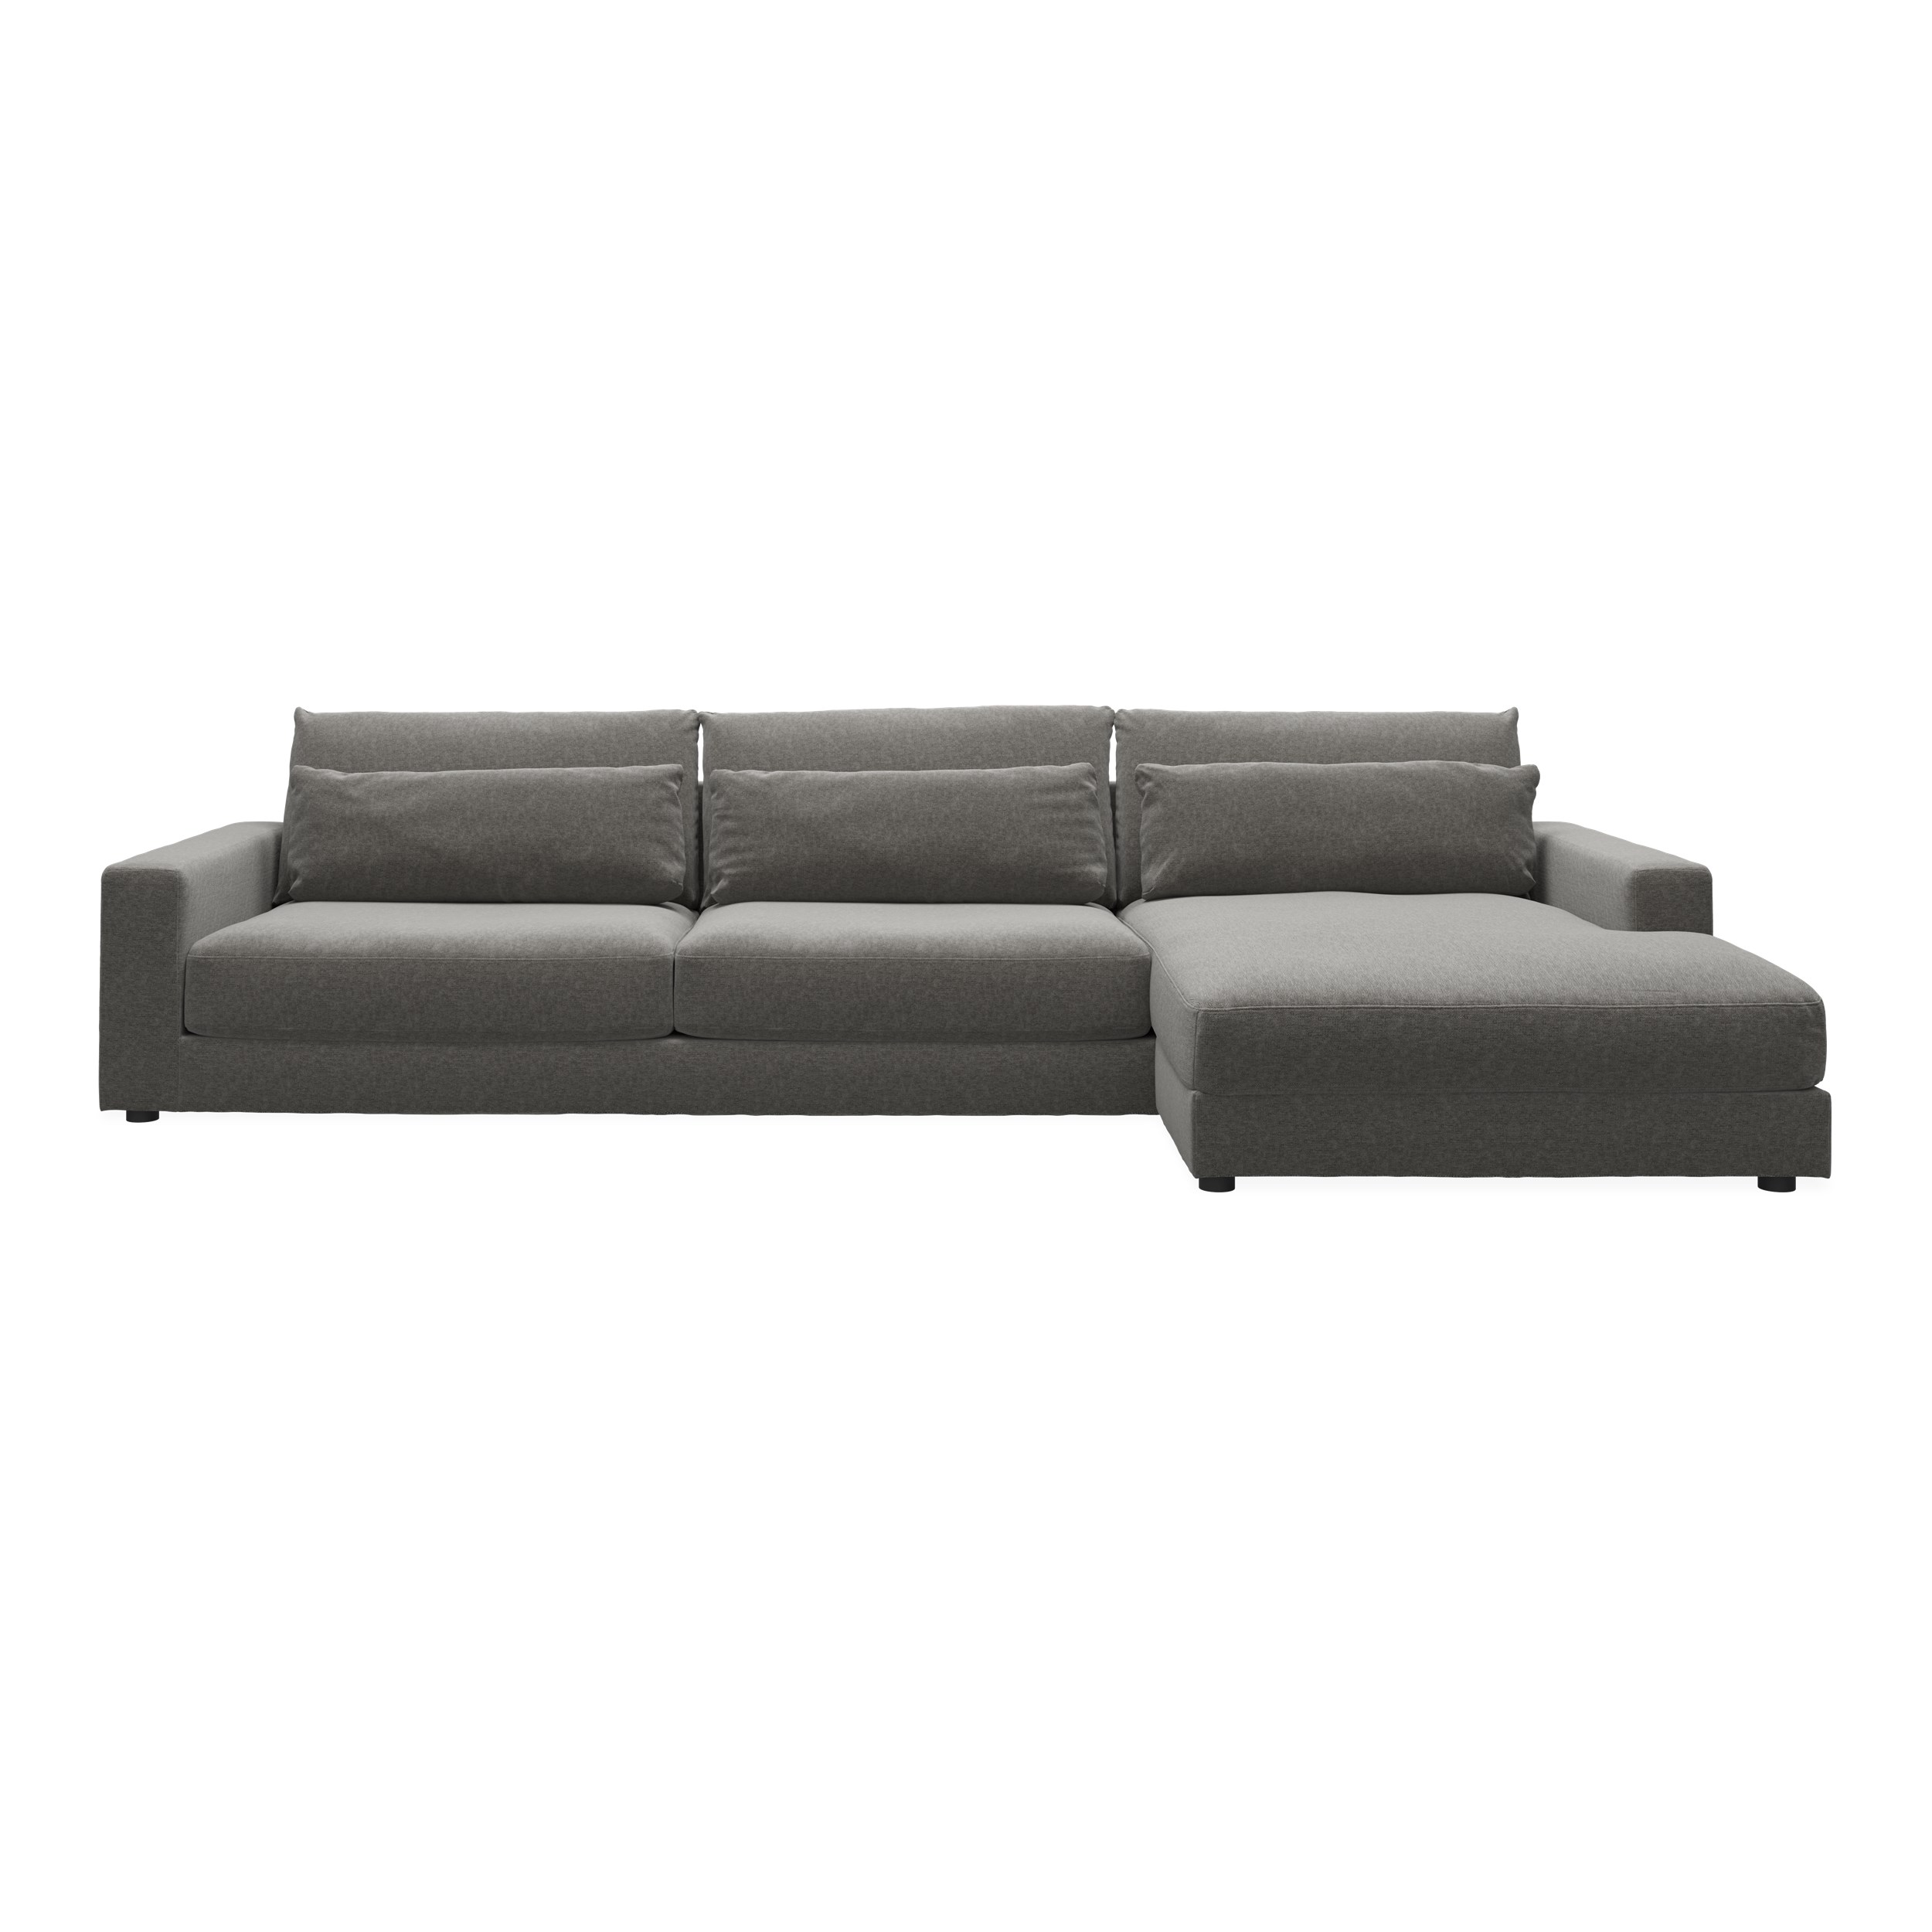 Halmstad högervänd soffa med schäslong - Danny 18 Grey textil och ben i svart plast